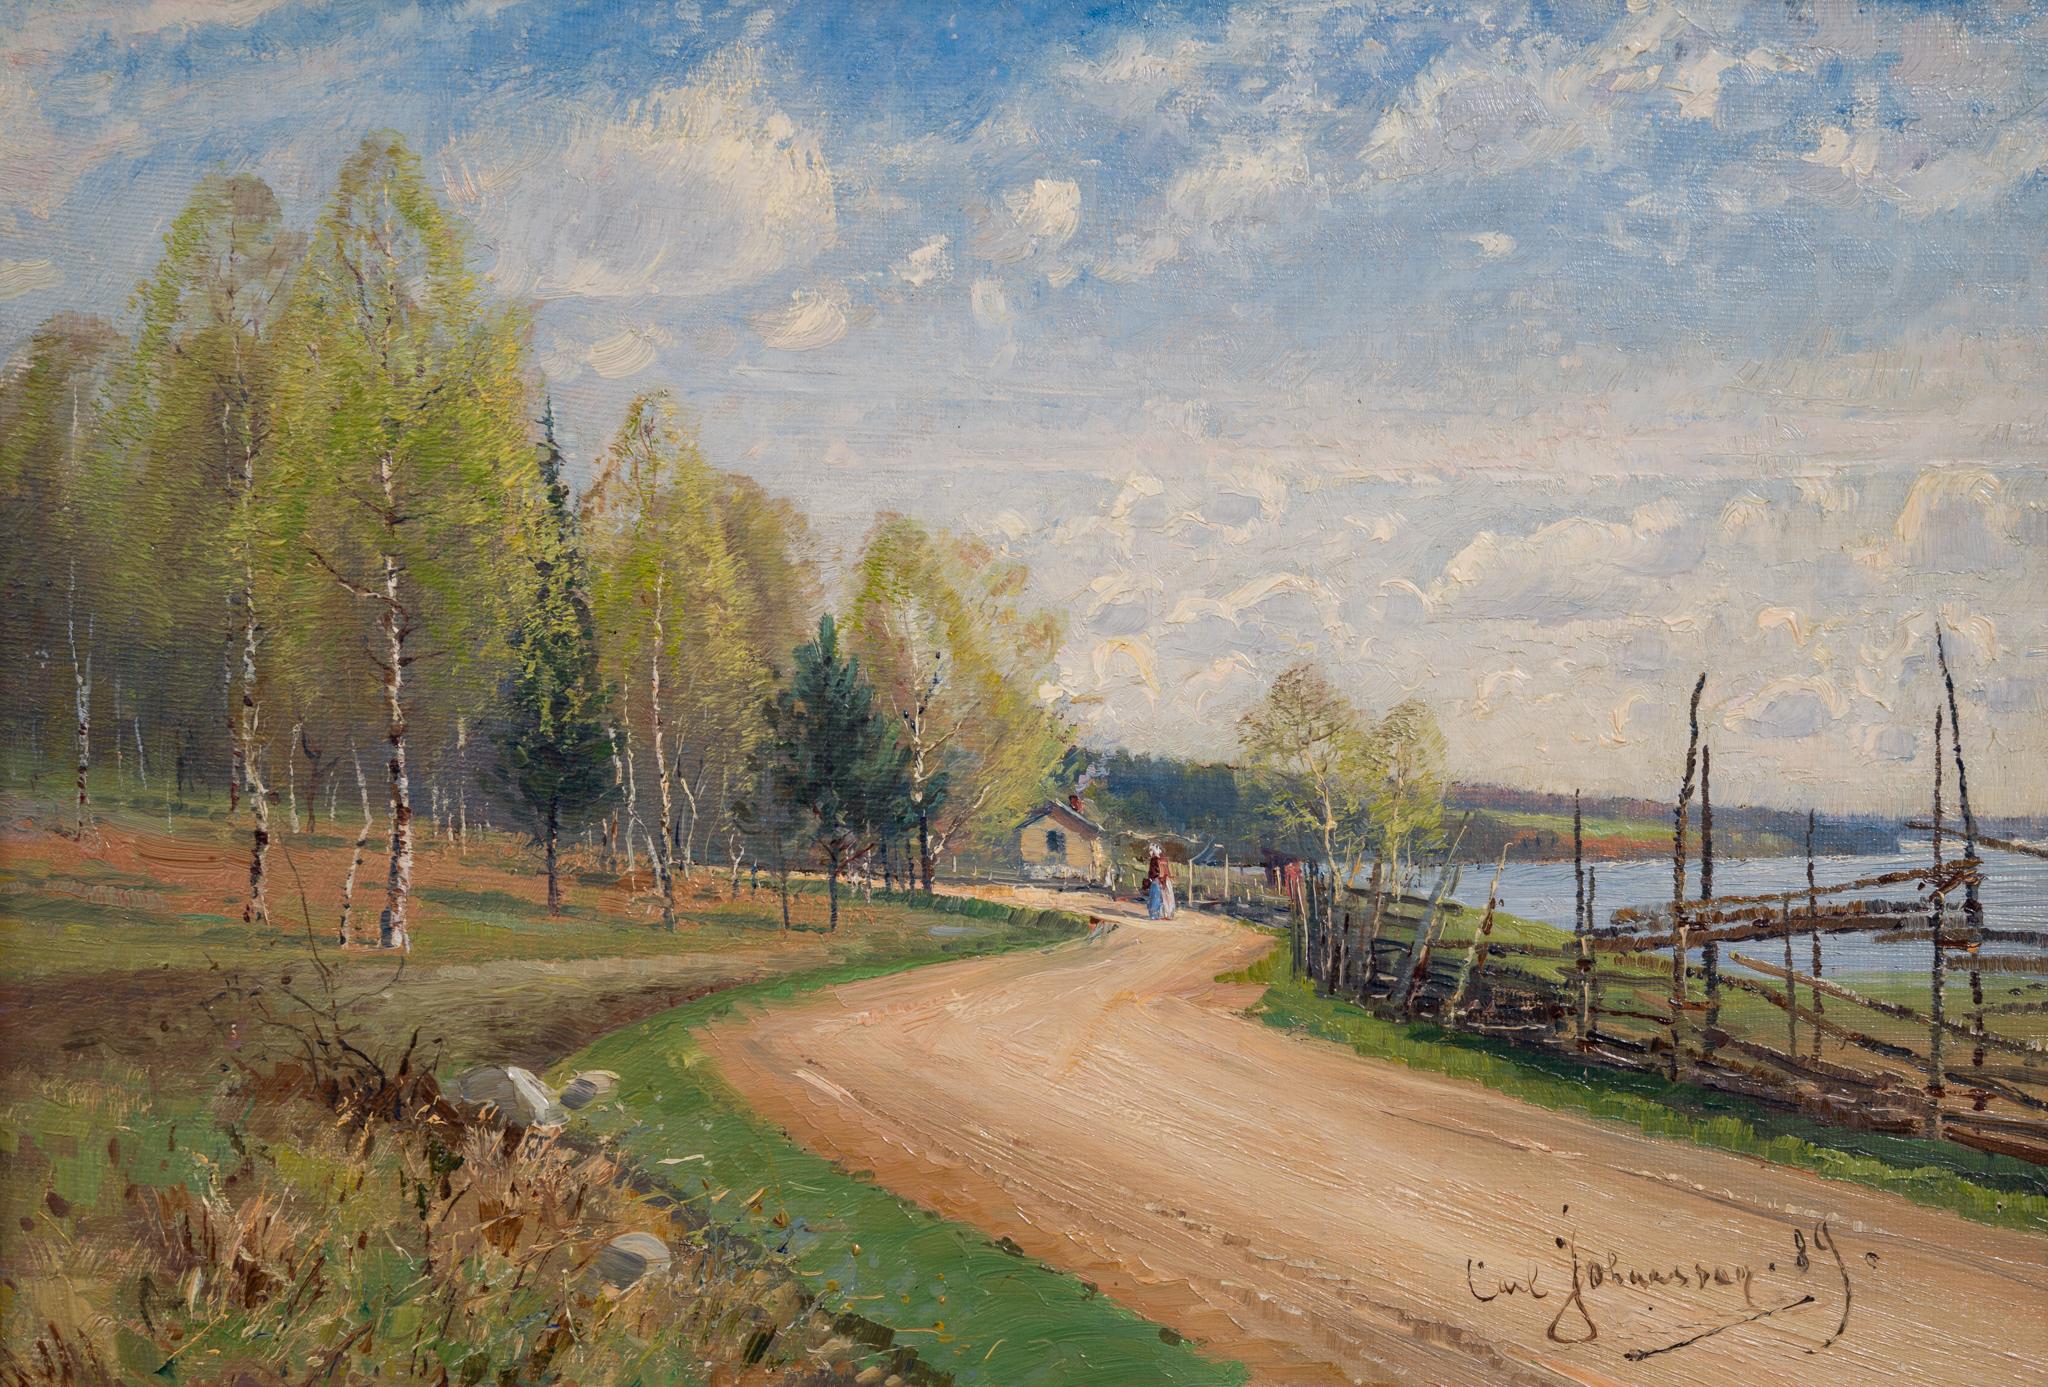 Impressionistische Sommerlandschaft mit Straße, bemalt 1889 (Impressionismus), Painting, von Carl Johansson 